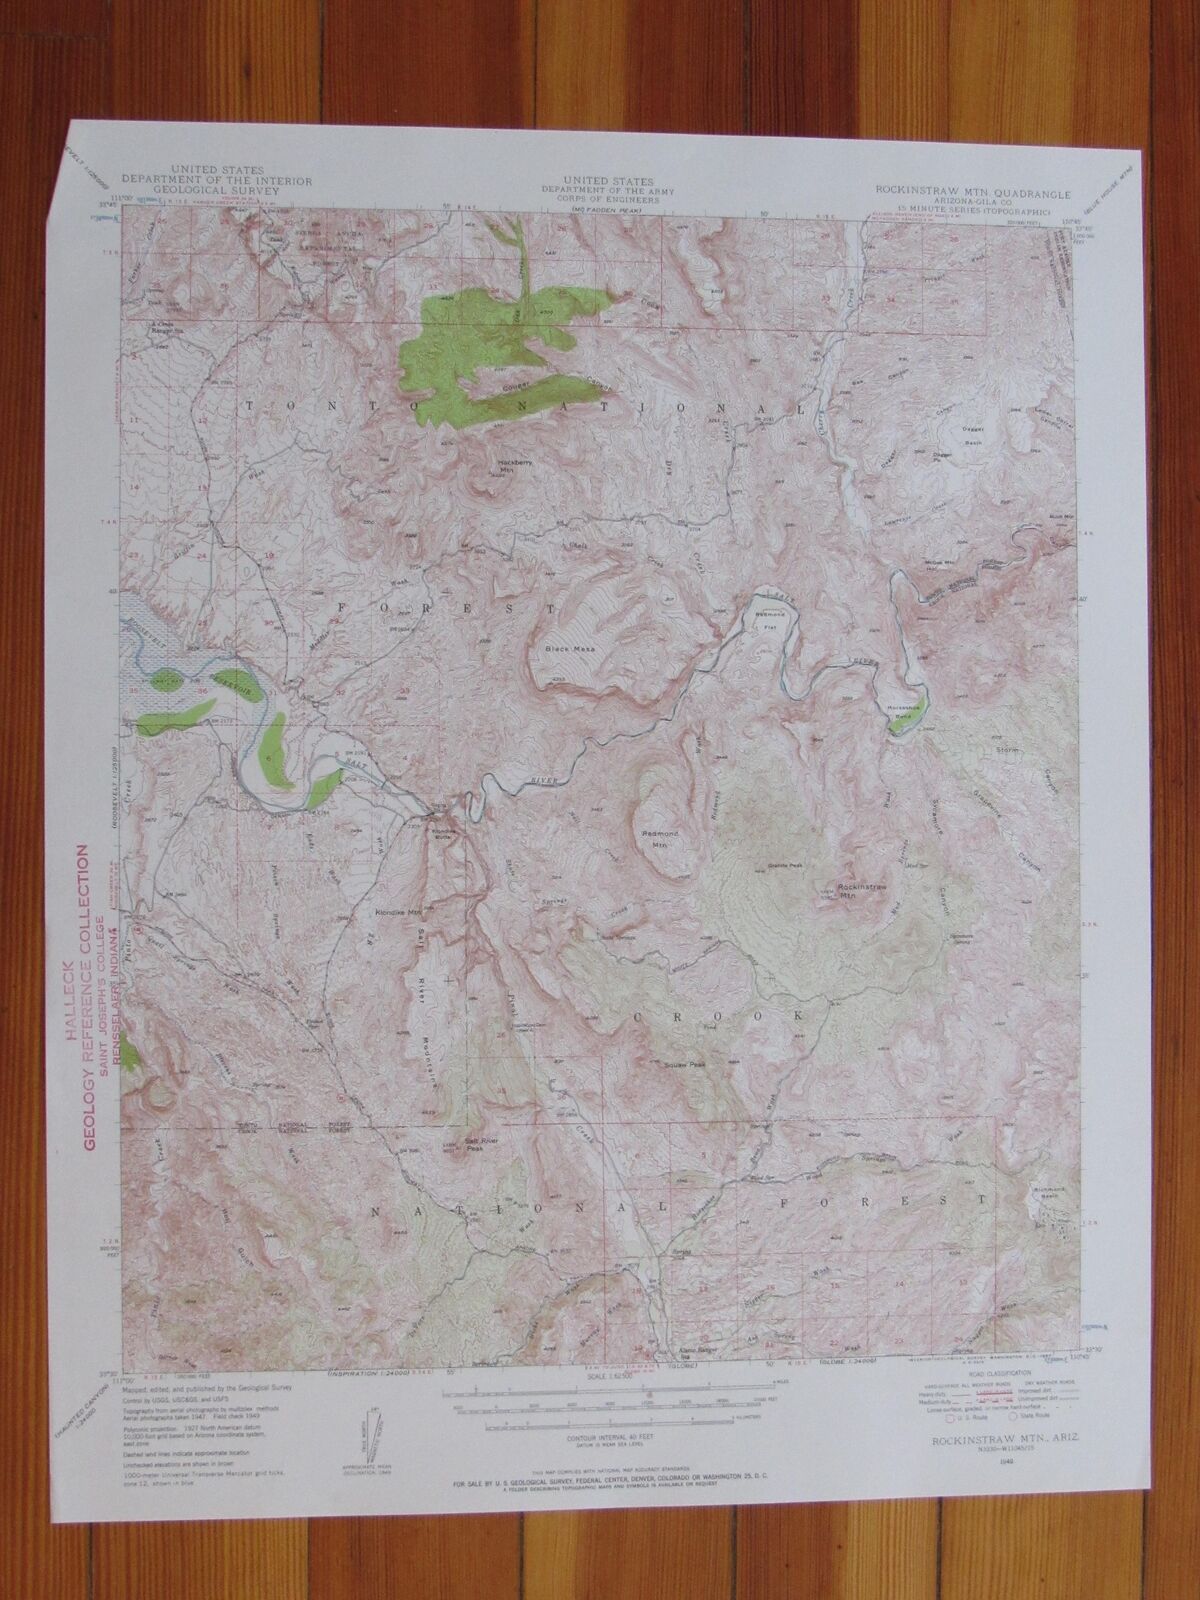 Rockinstraw Mountain Arizona 1957 Original Vintage USGS Topo Map